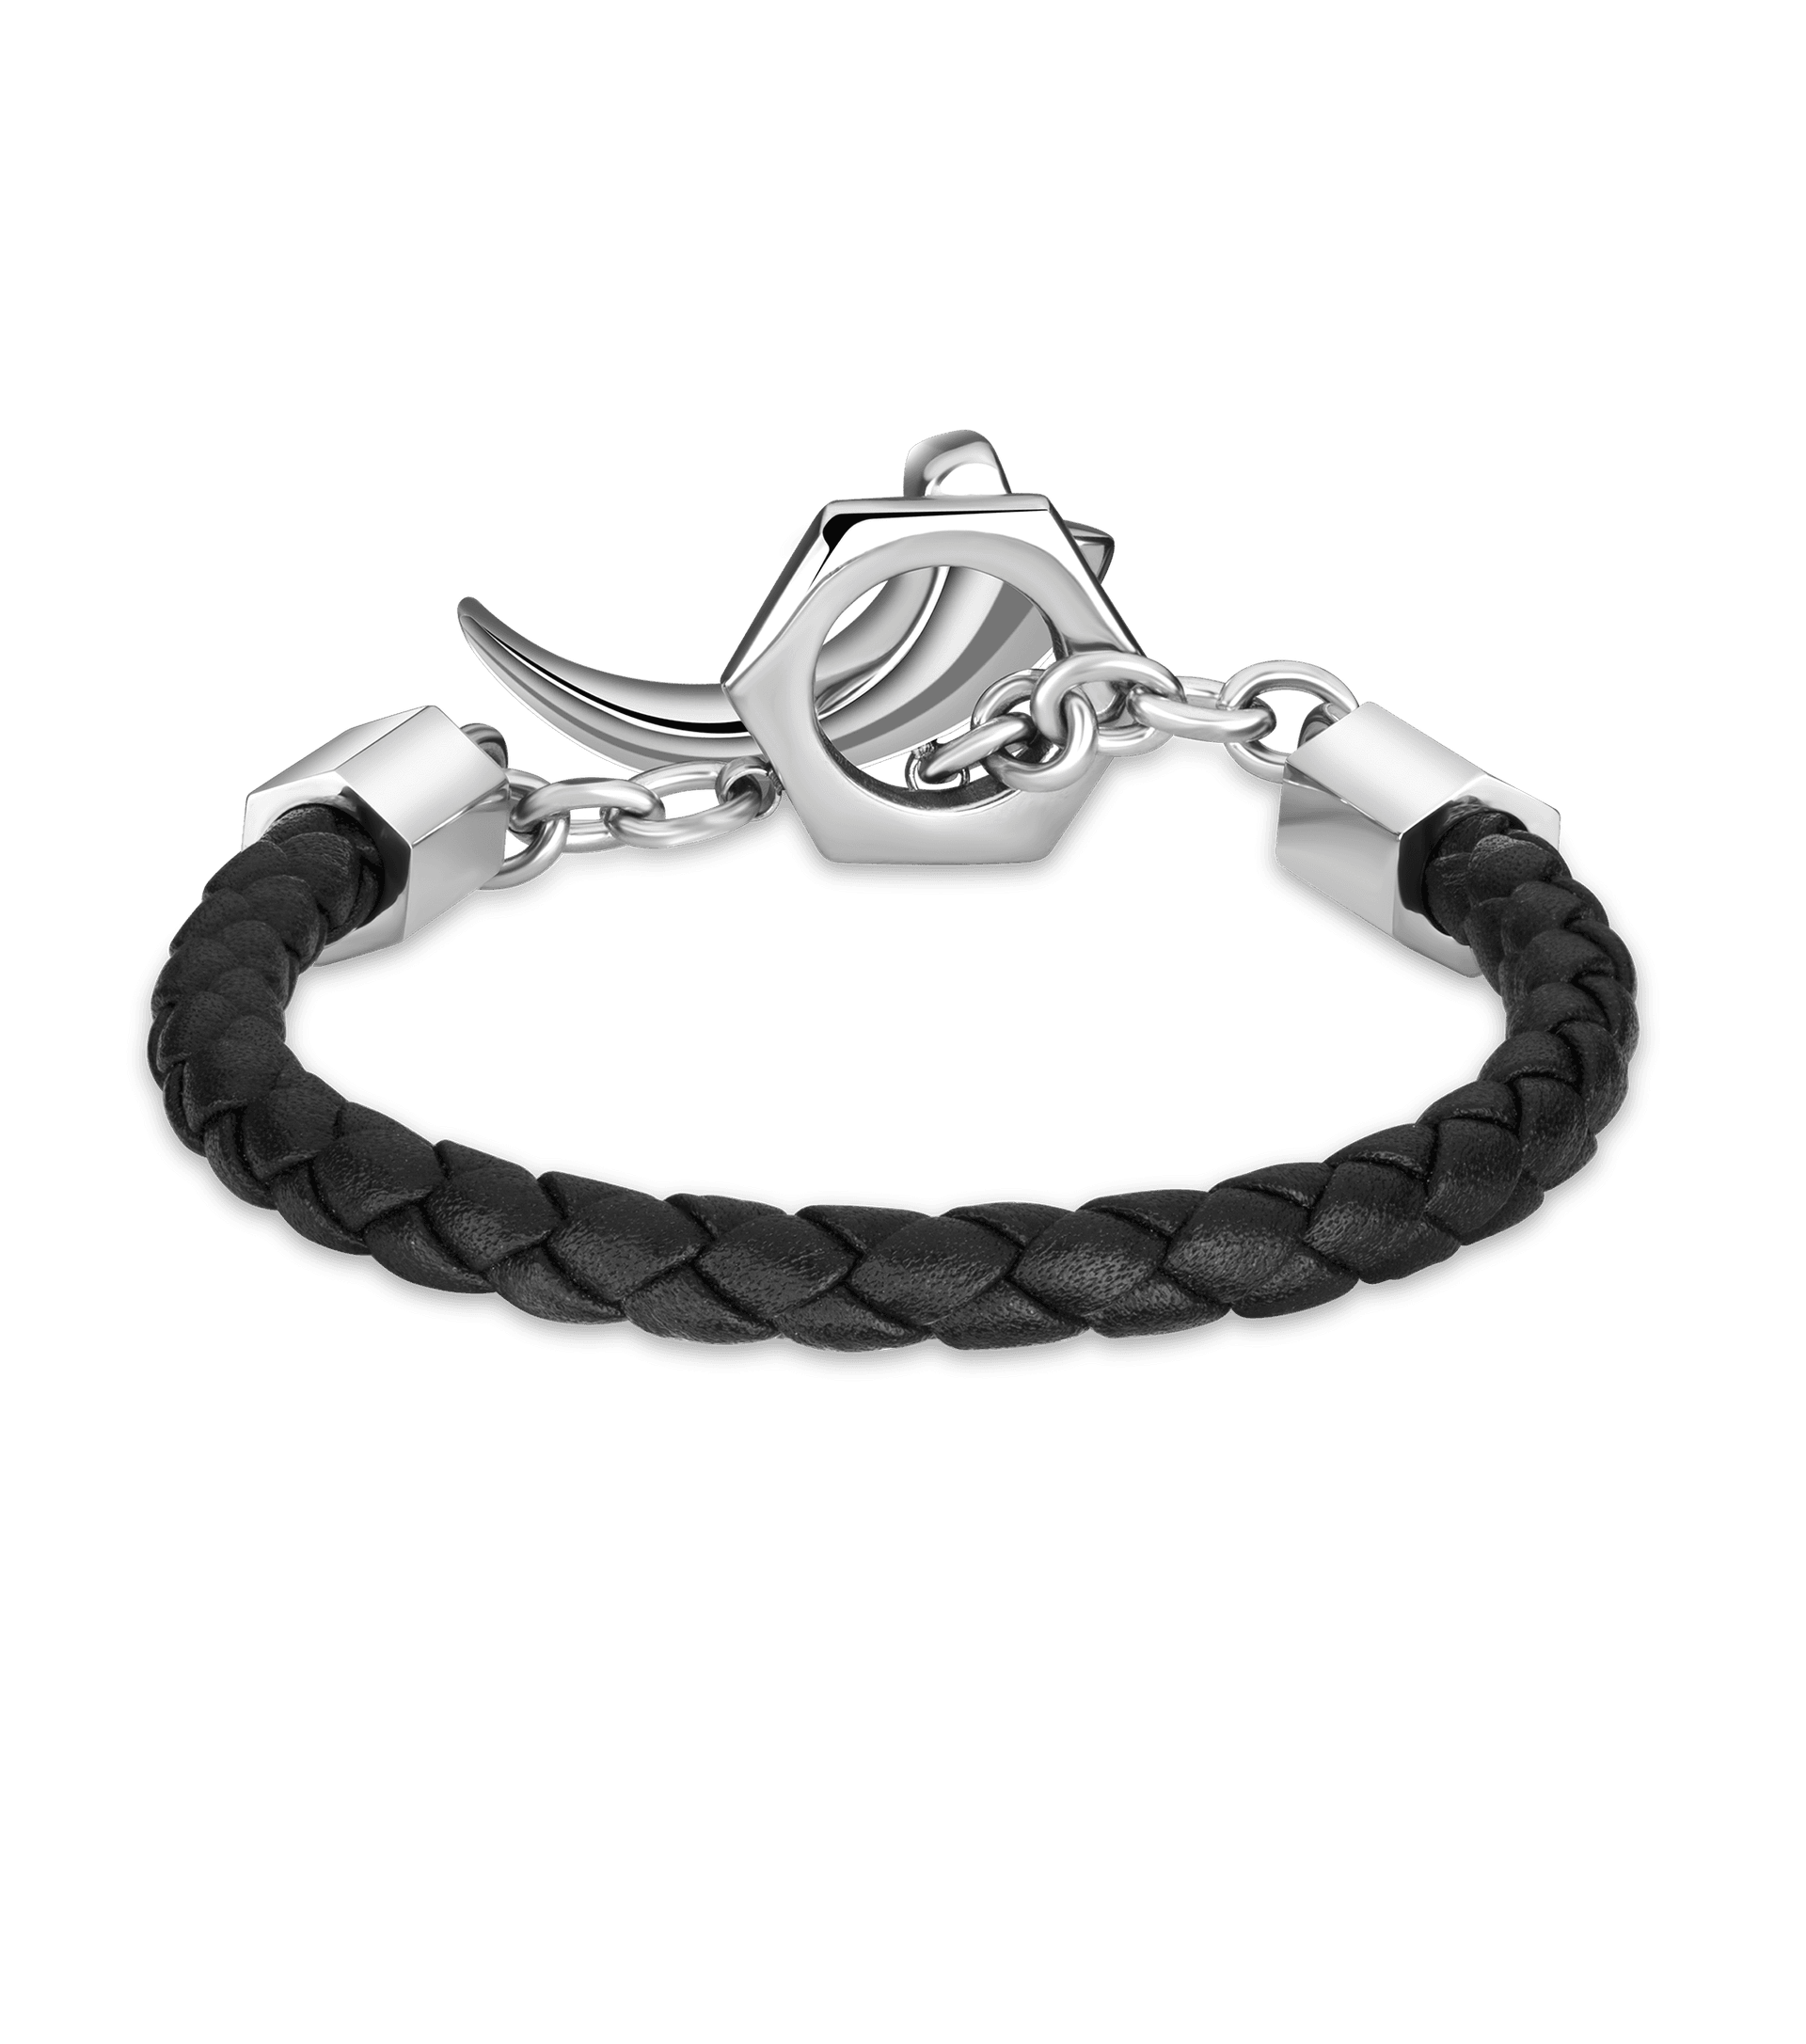 Versandkostenfreier Markt Police jewels - For Bracelet Men Talon PEAGB2211911 Police